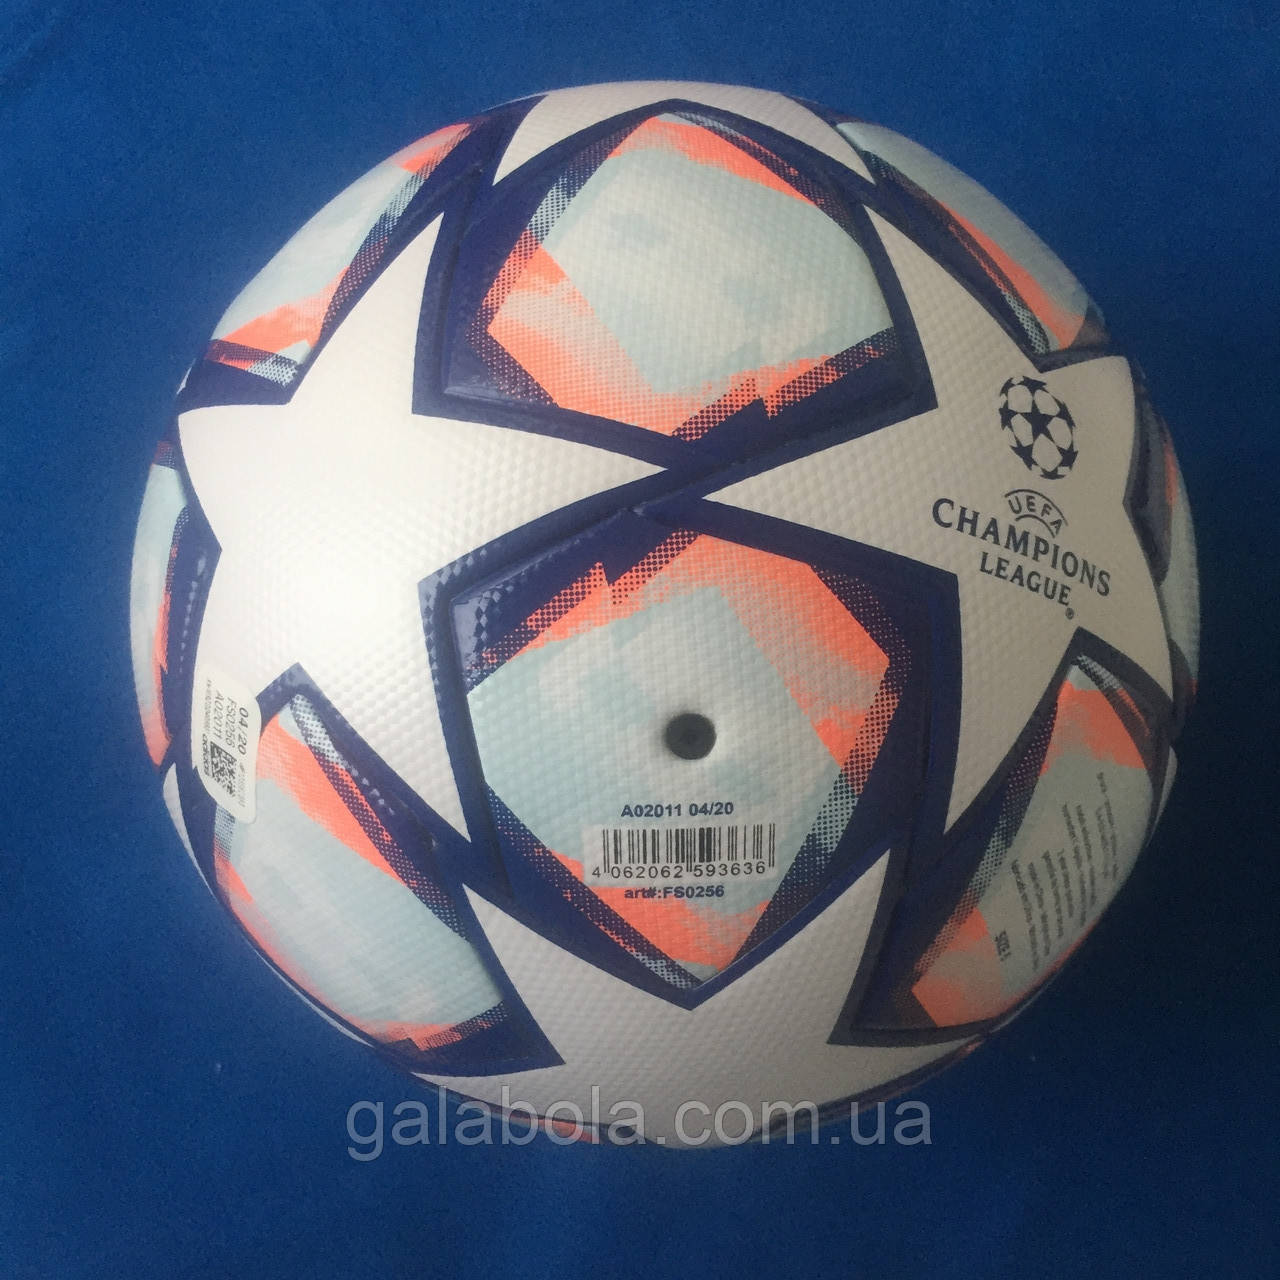 Мяч футбольный Adidas Finale 20 League FS0256 (размер 5), цена 850 грн.,  купить в Киеве — Prom.ua (ID#1250637227)